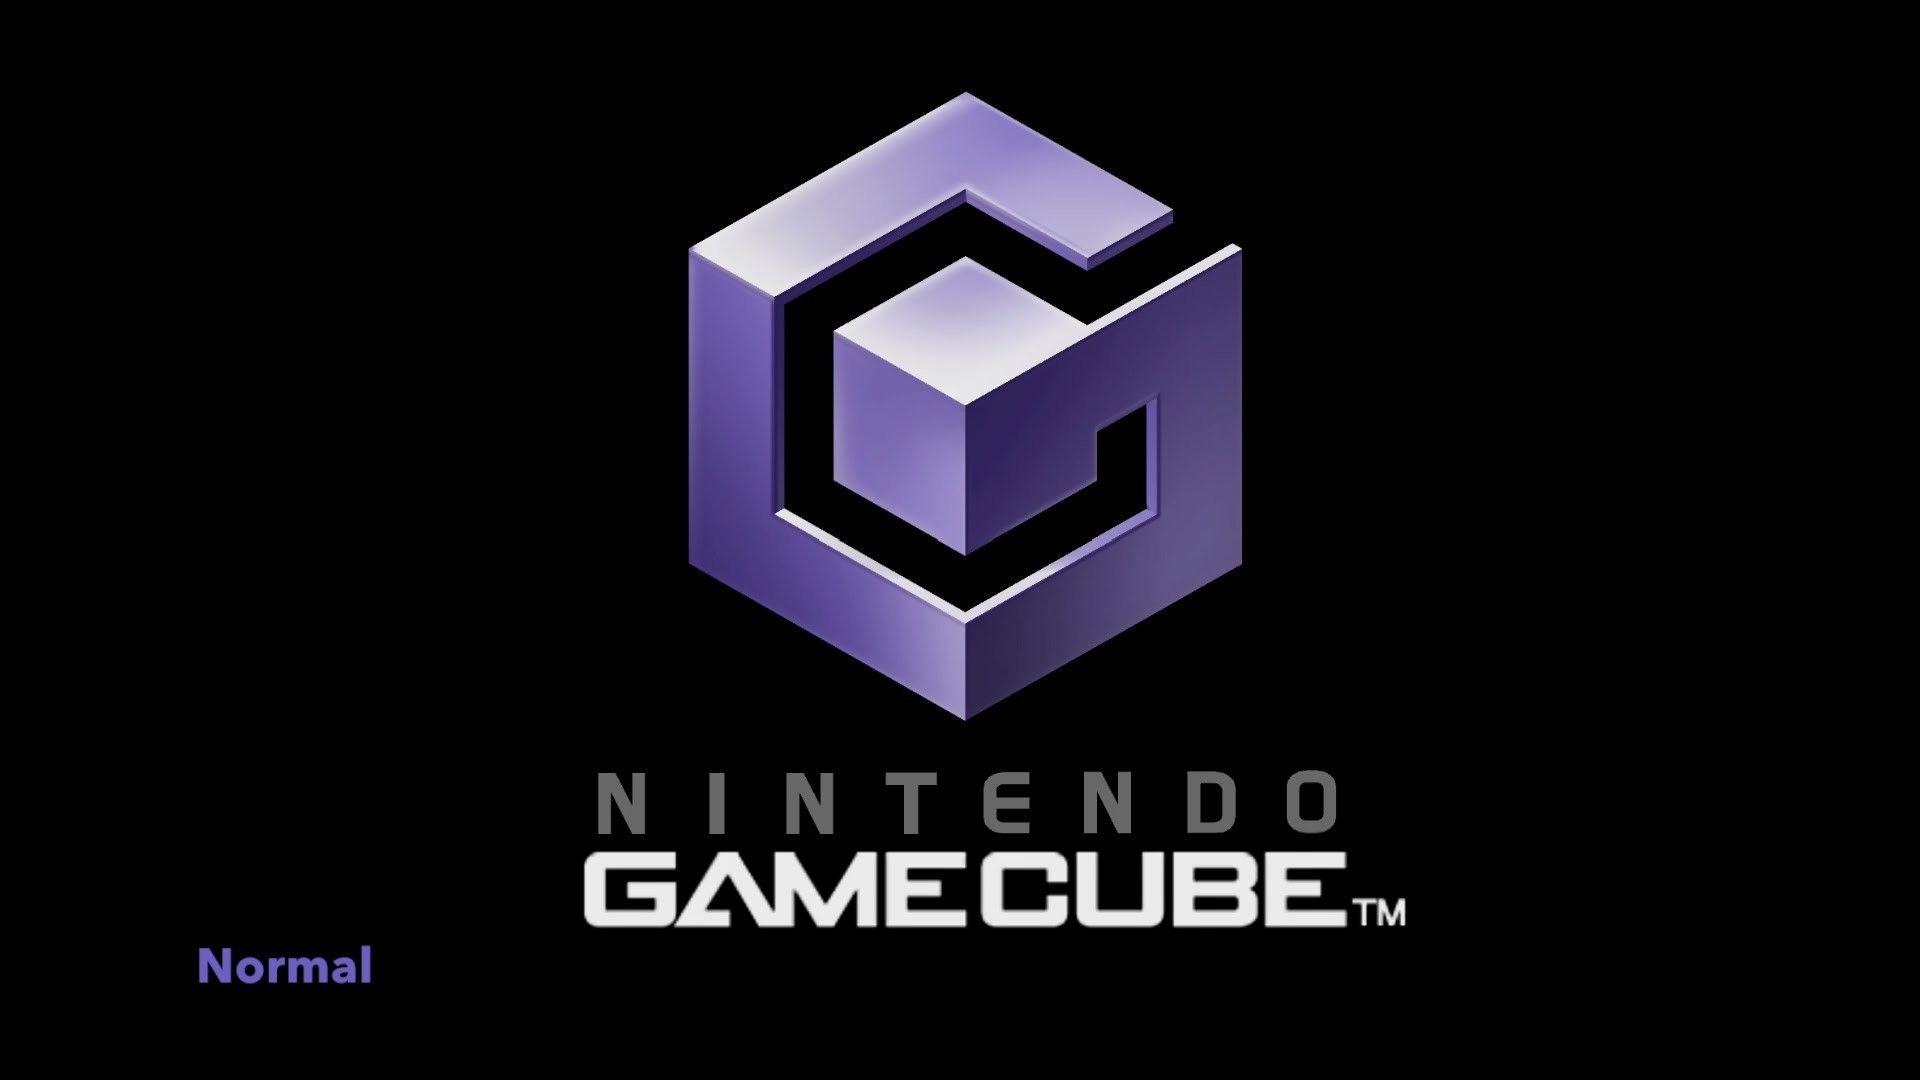 gamecube 1080p